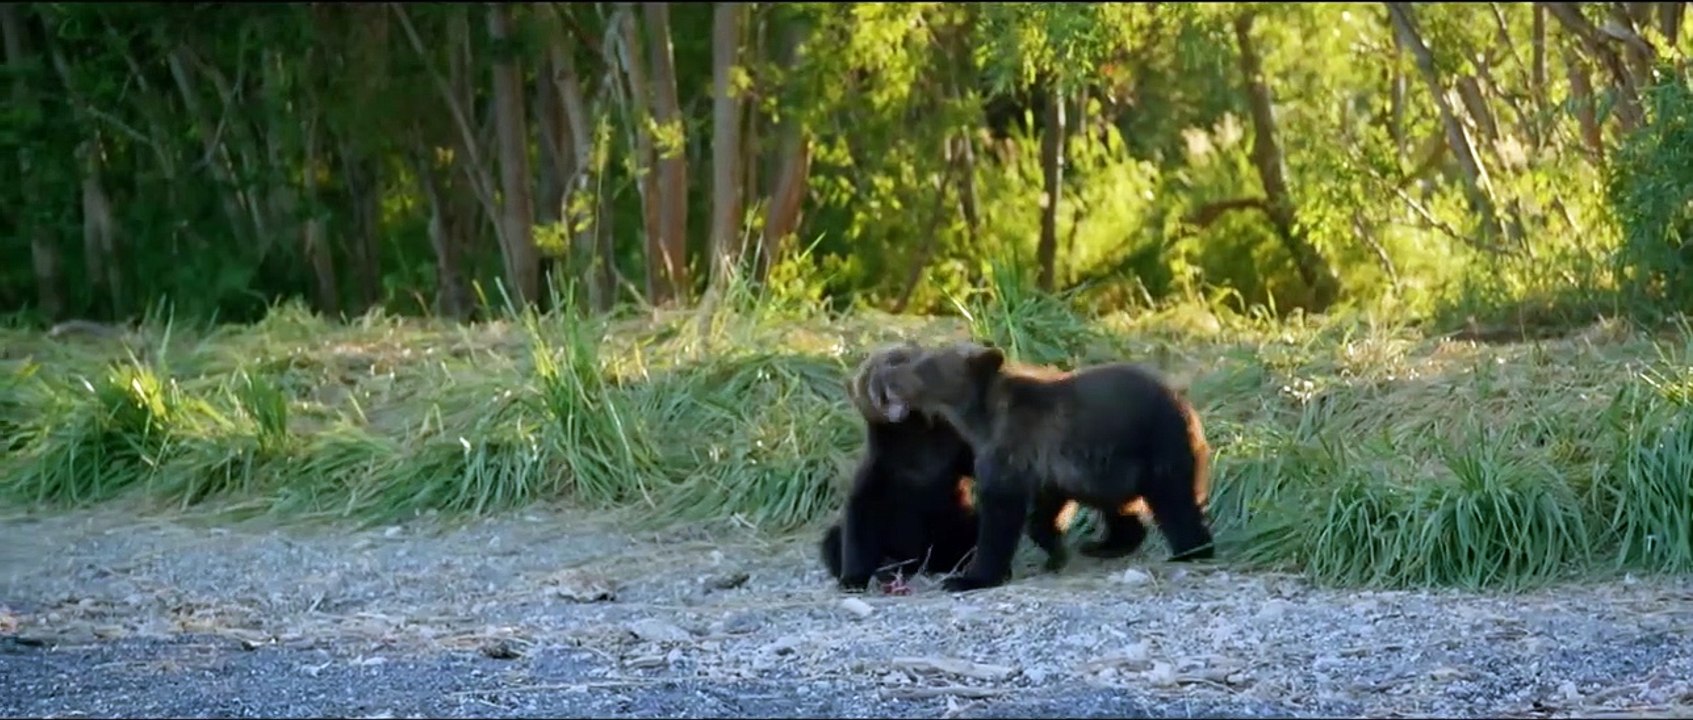 Im Land der Bären | movie | 2014 | Official Trailer